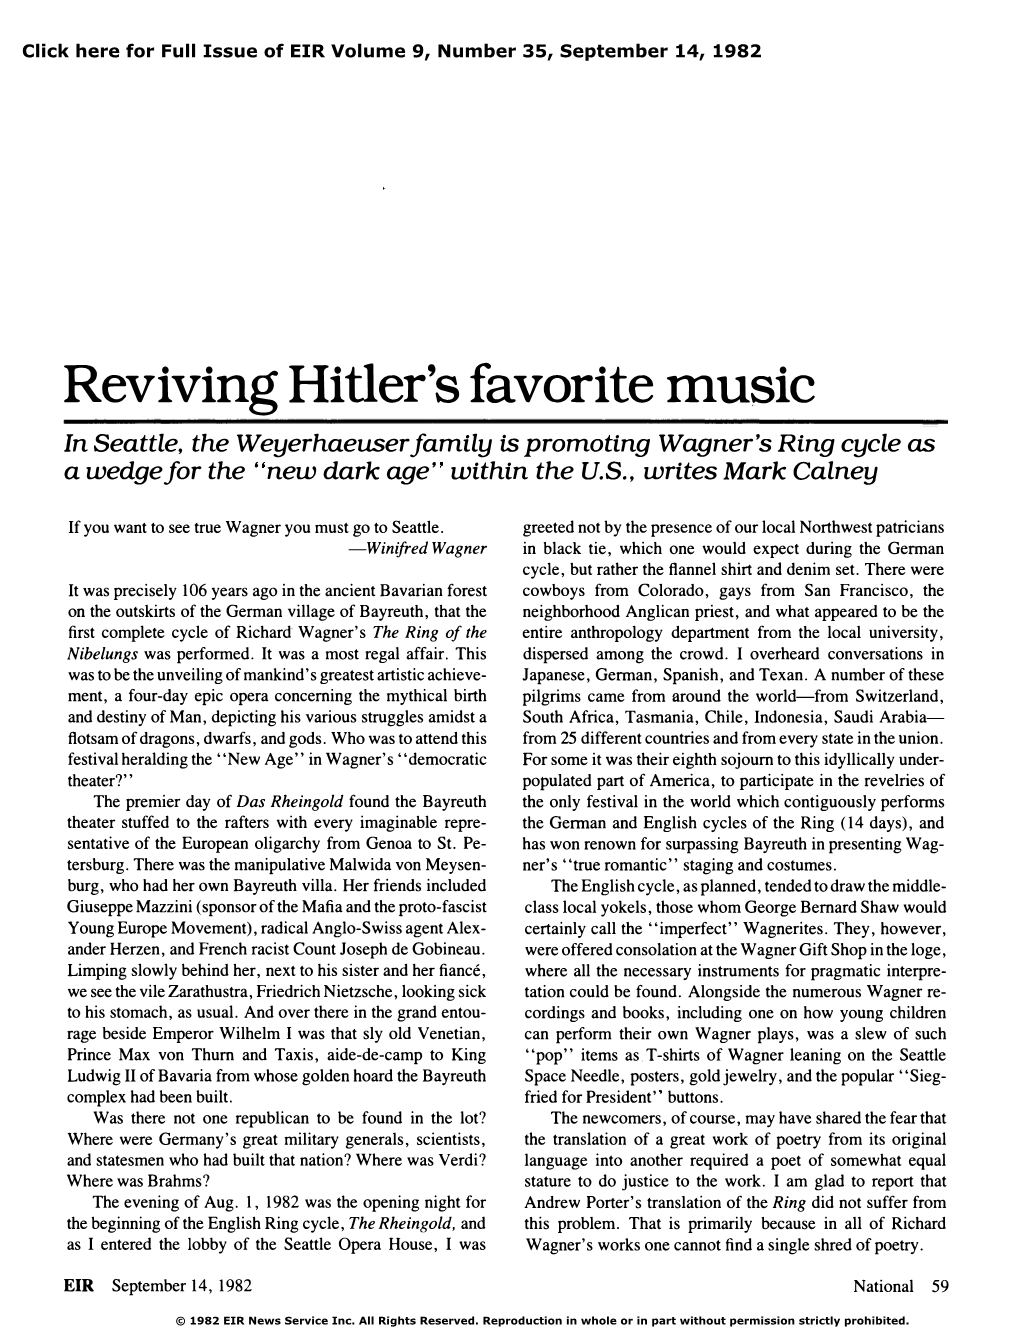 Reviving Hitler's Favorite Music